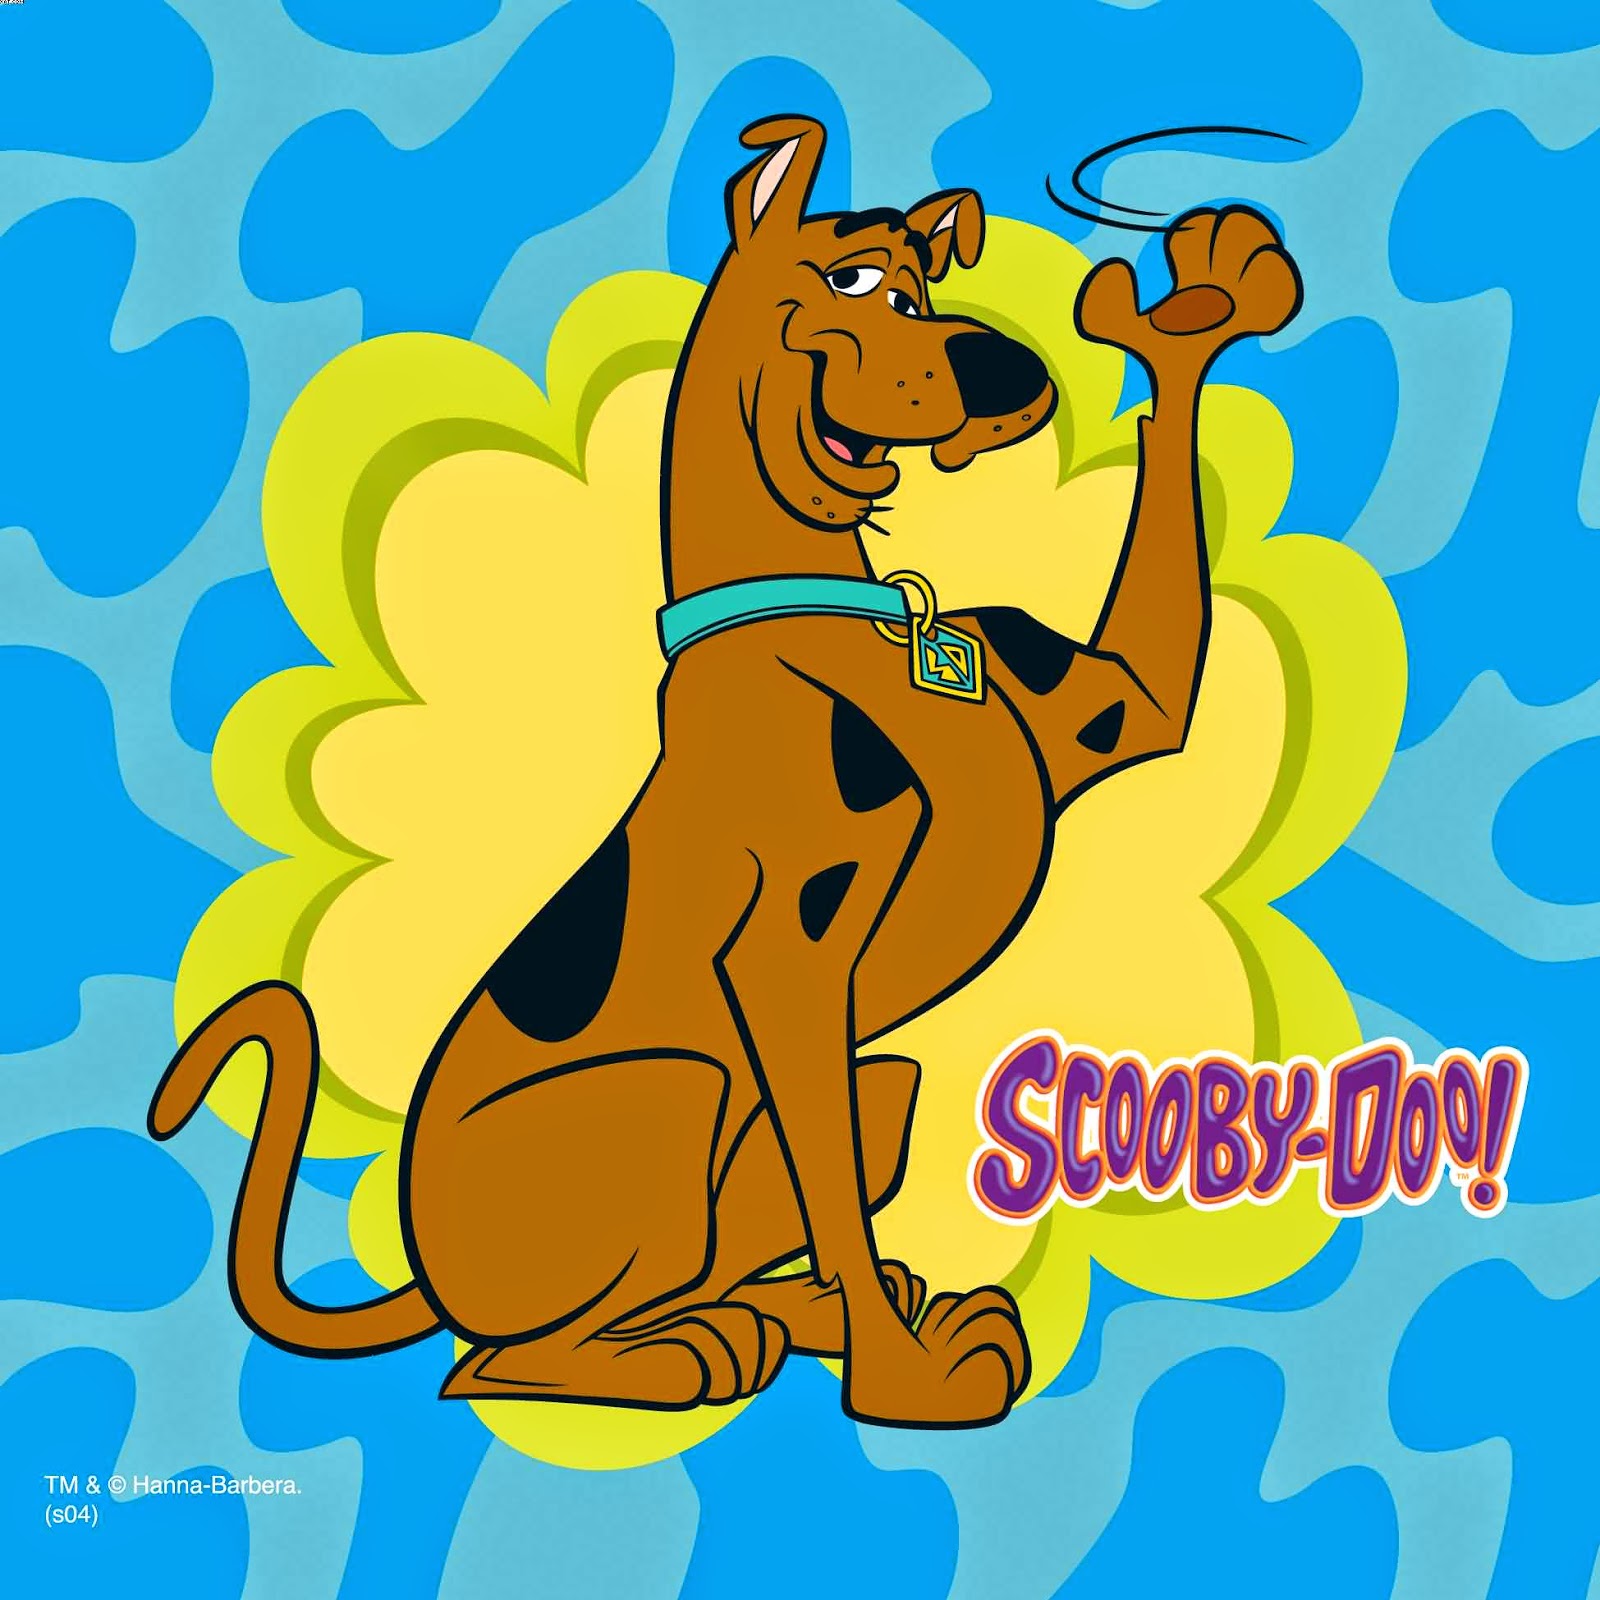 Kumpulan Gambar Kartun Scooby Gambar Lucu Terbaru Cartoon Animation Pictures